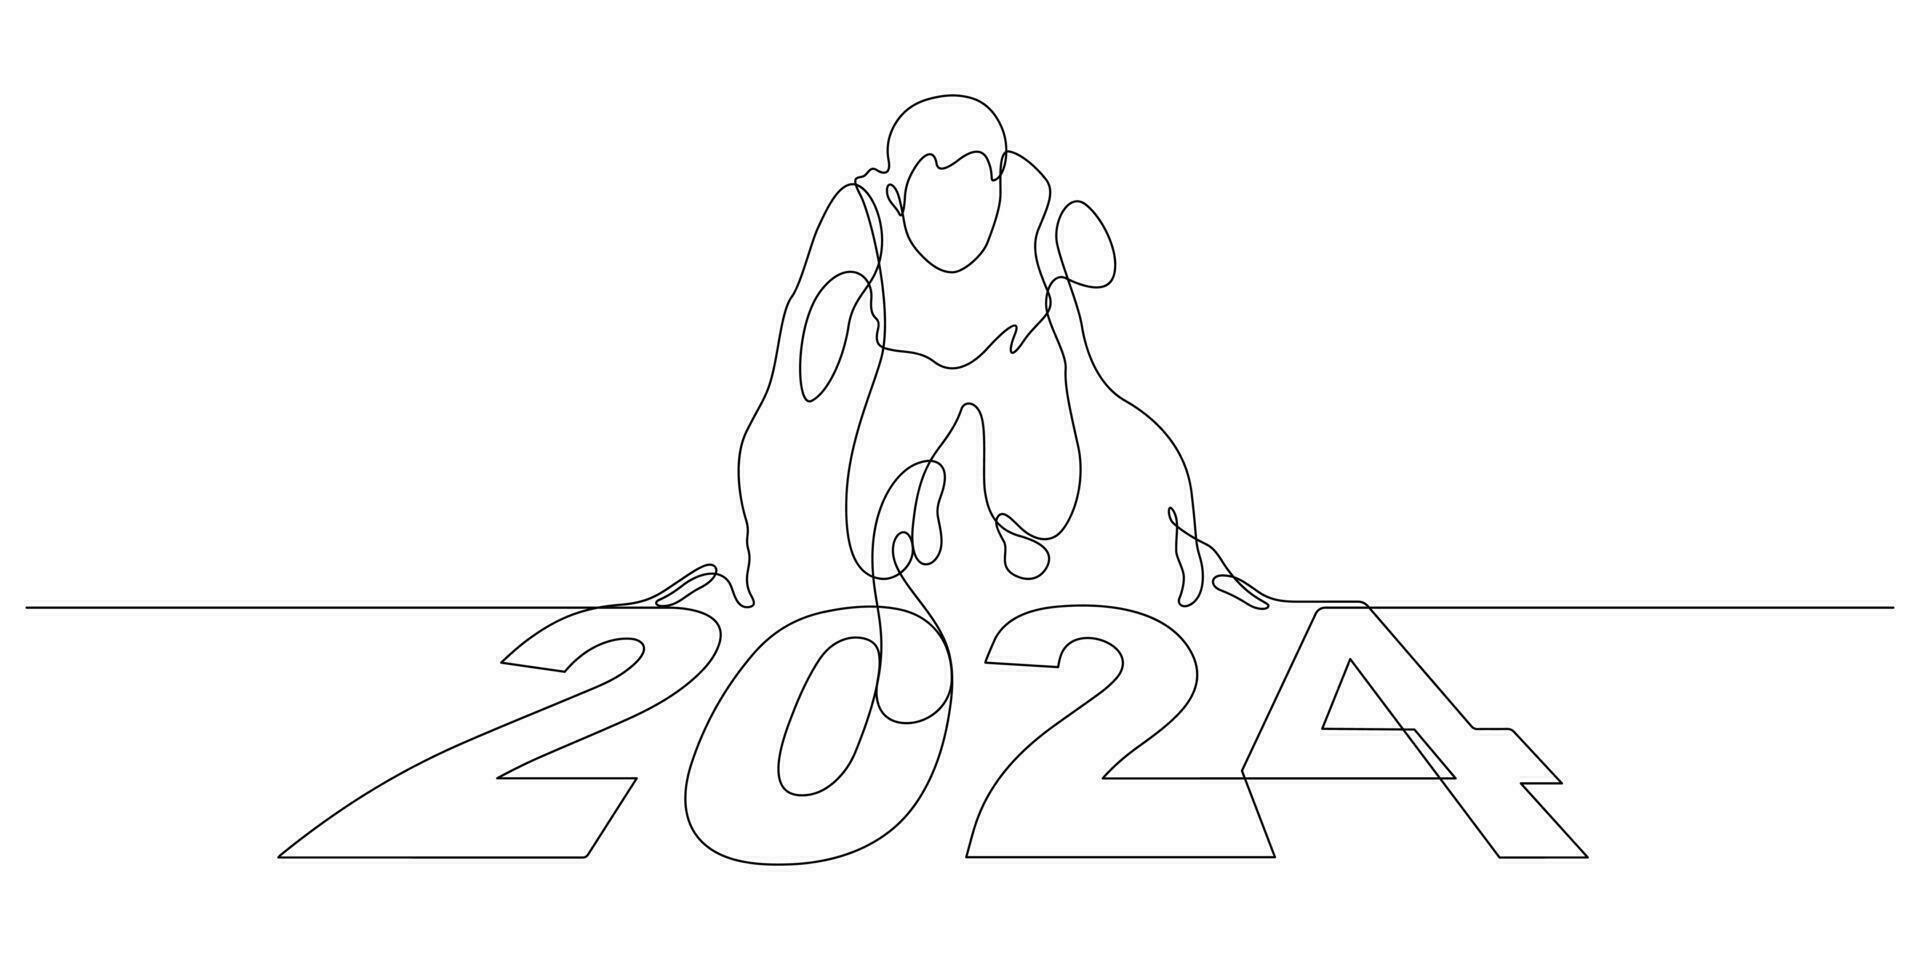 nieuw jaar 2024 begin omhoog en beginnen, doelen en plannen voor nieuw jaar in doorlopend lijn tekening vector